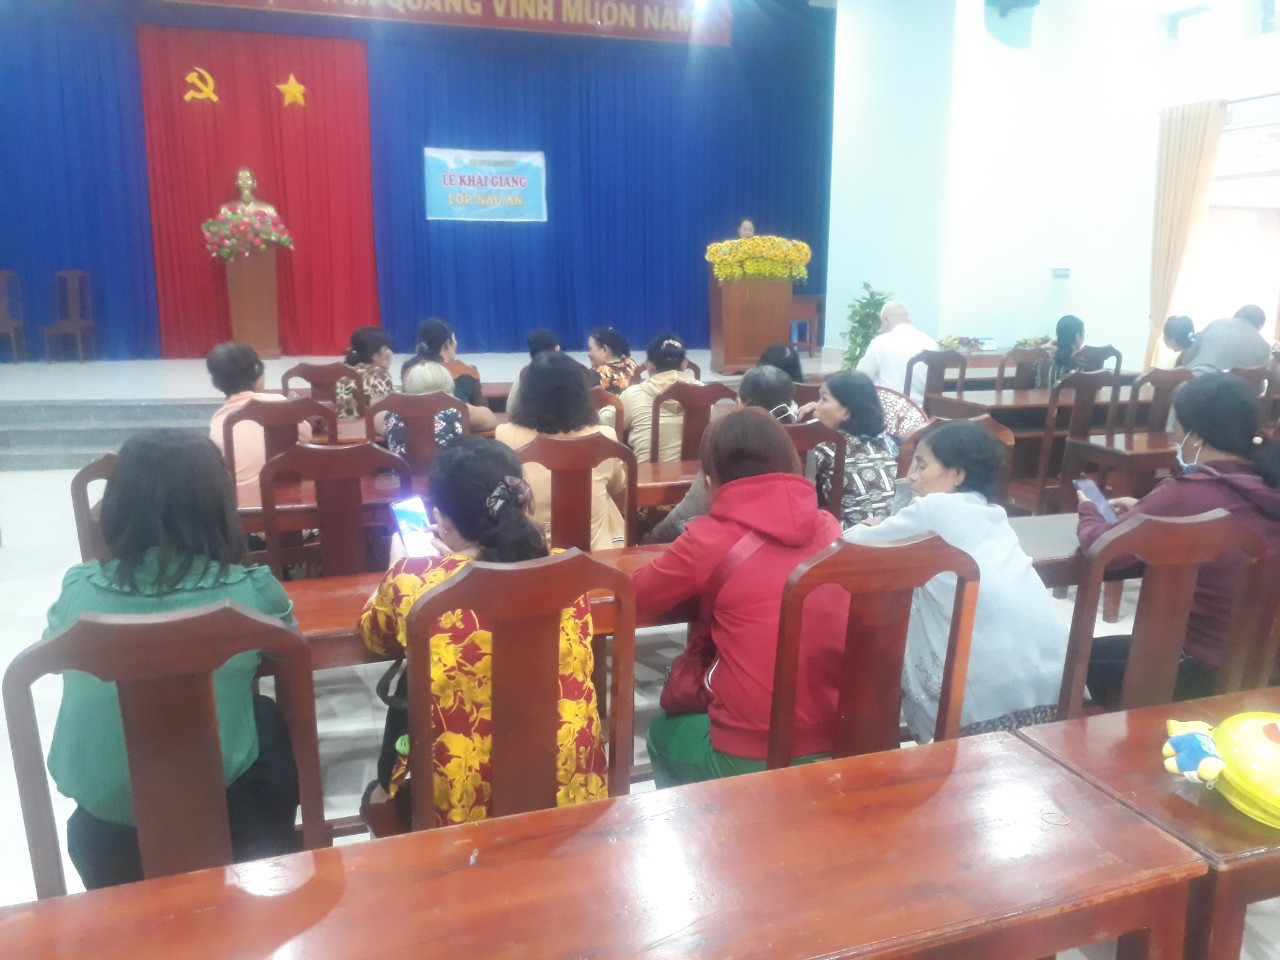 Trảng Bàng khai giảng lớp đào tạo nghề lao động nông thôn tại xã Hưng Thuận và Xã Đôn Thuận